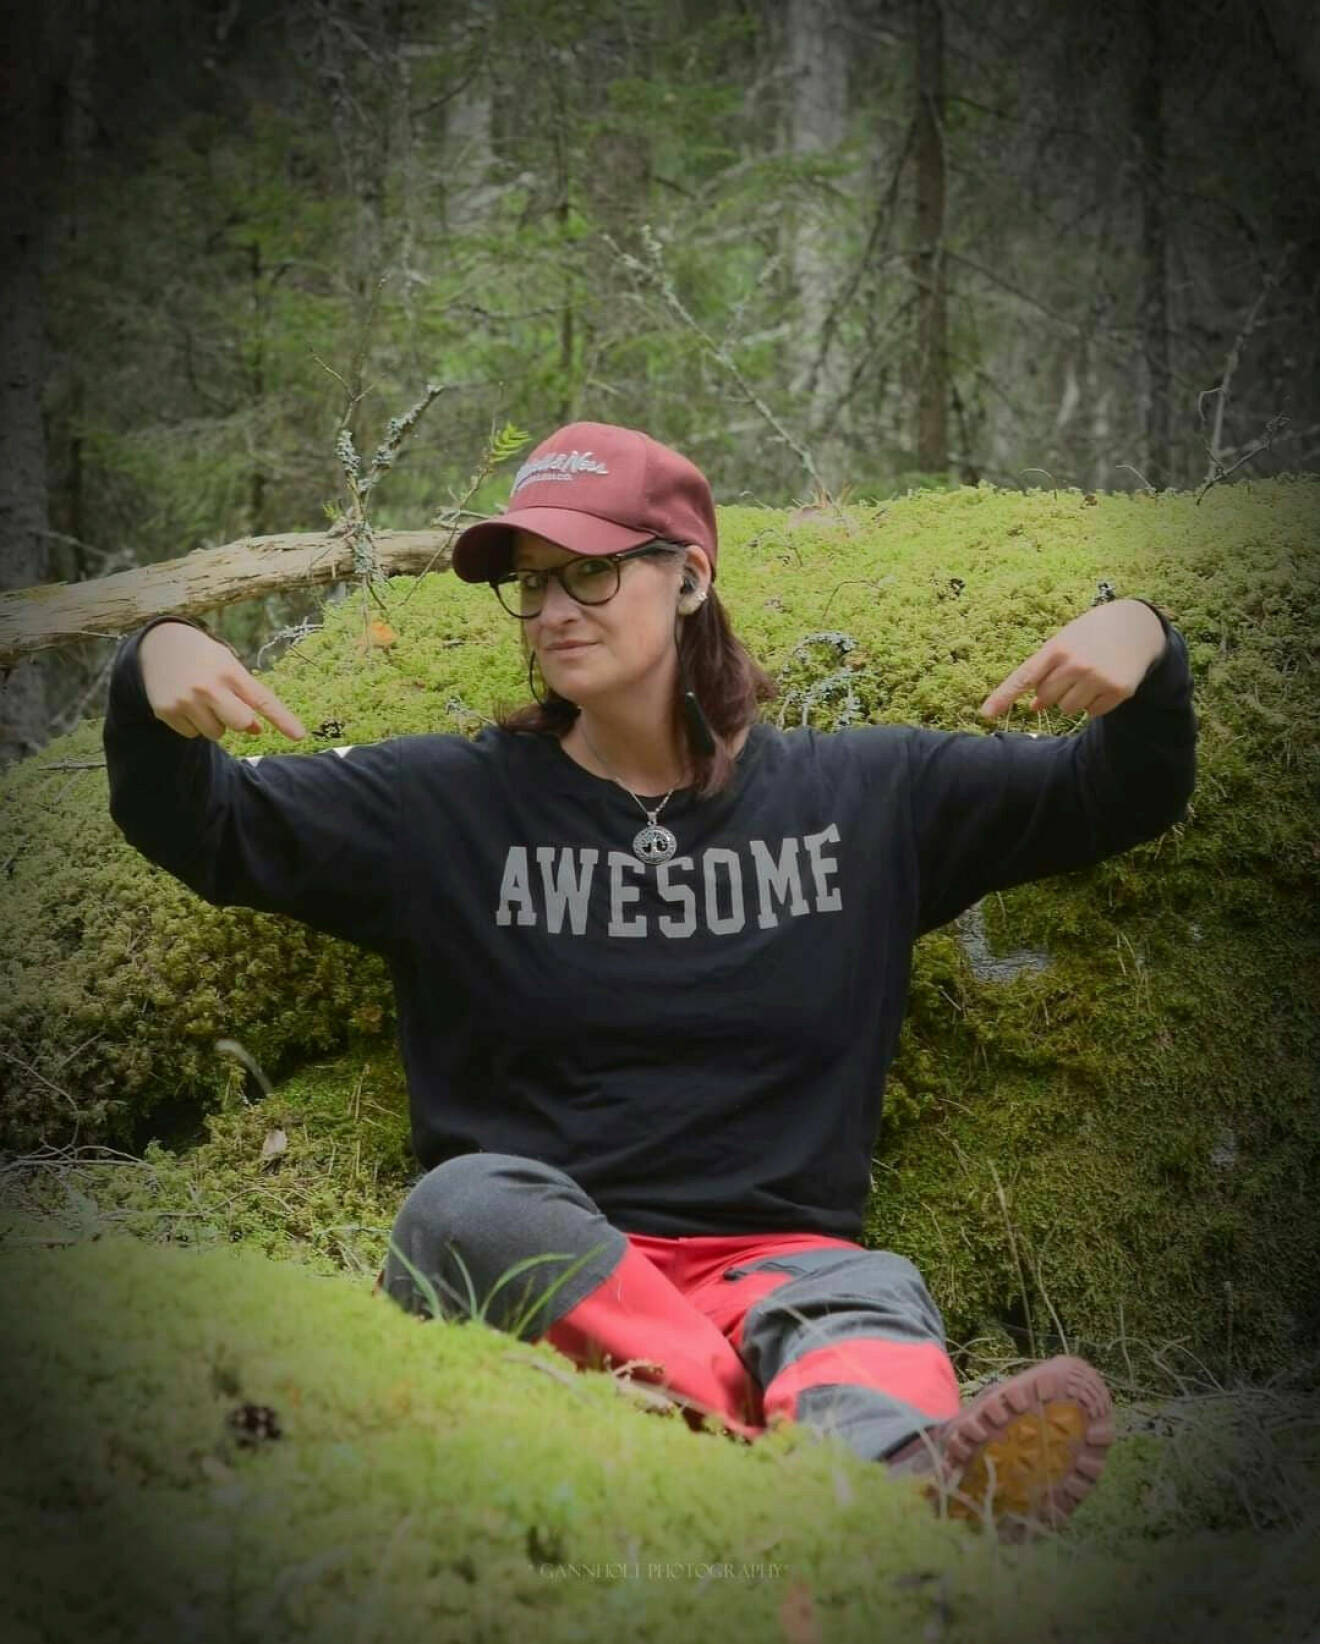 Kristina sitter bland mossan i skogen. Hon har på sig en keps och en tröja med orden "awesome".